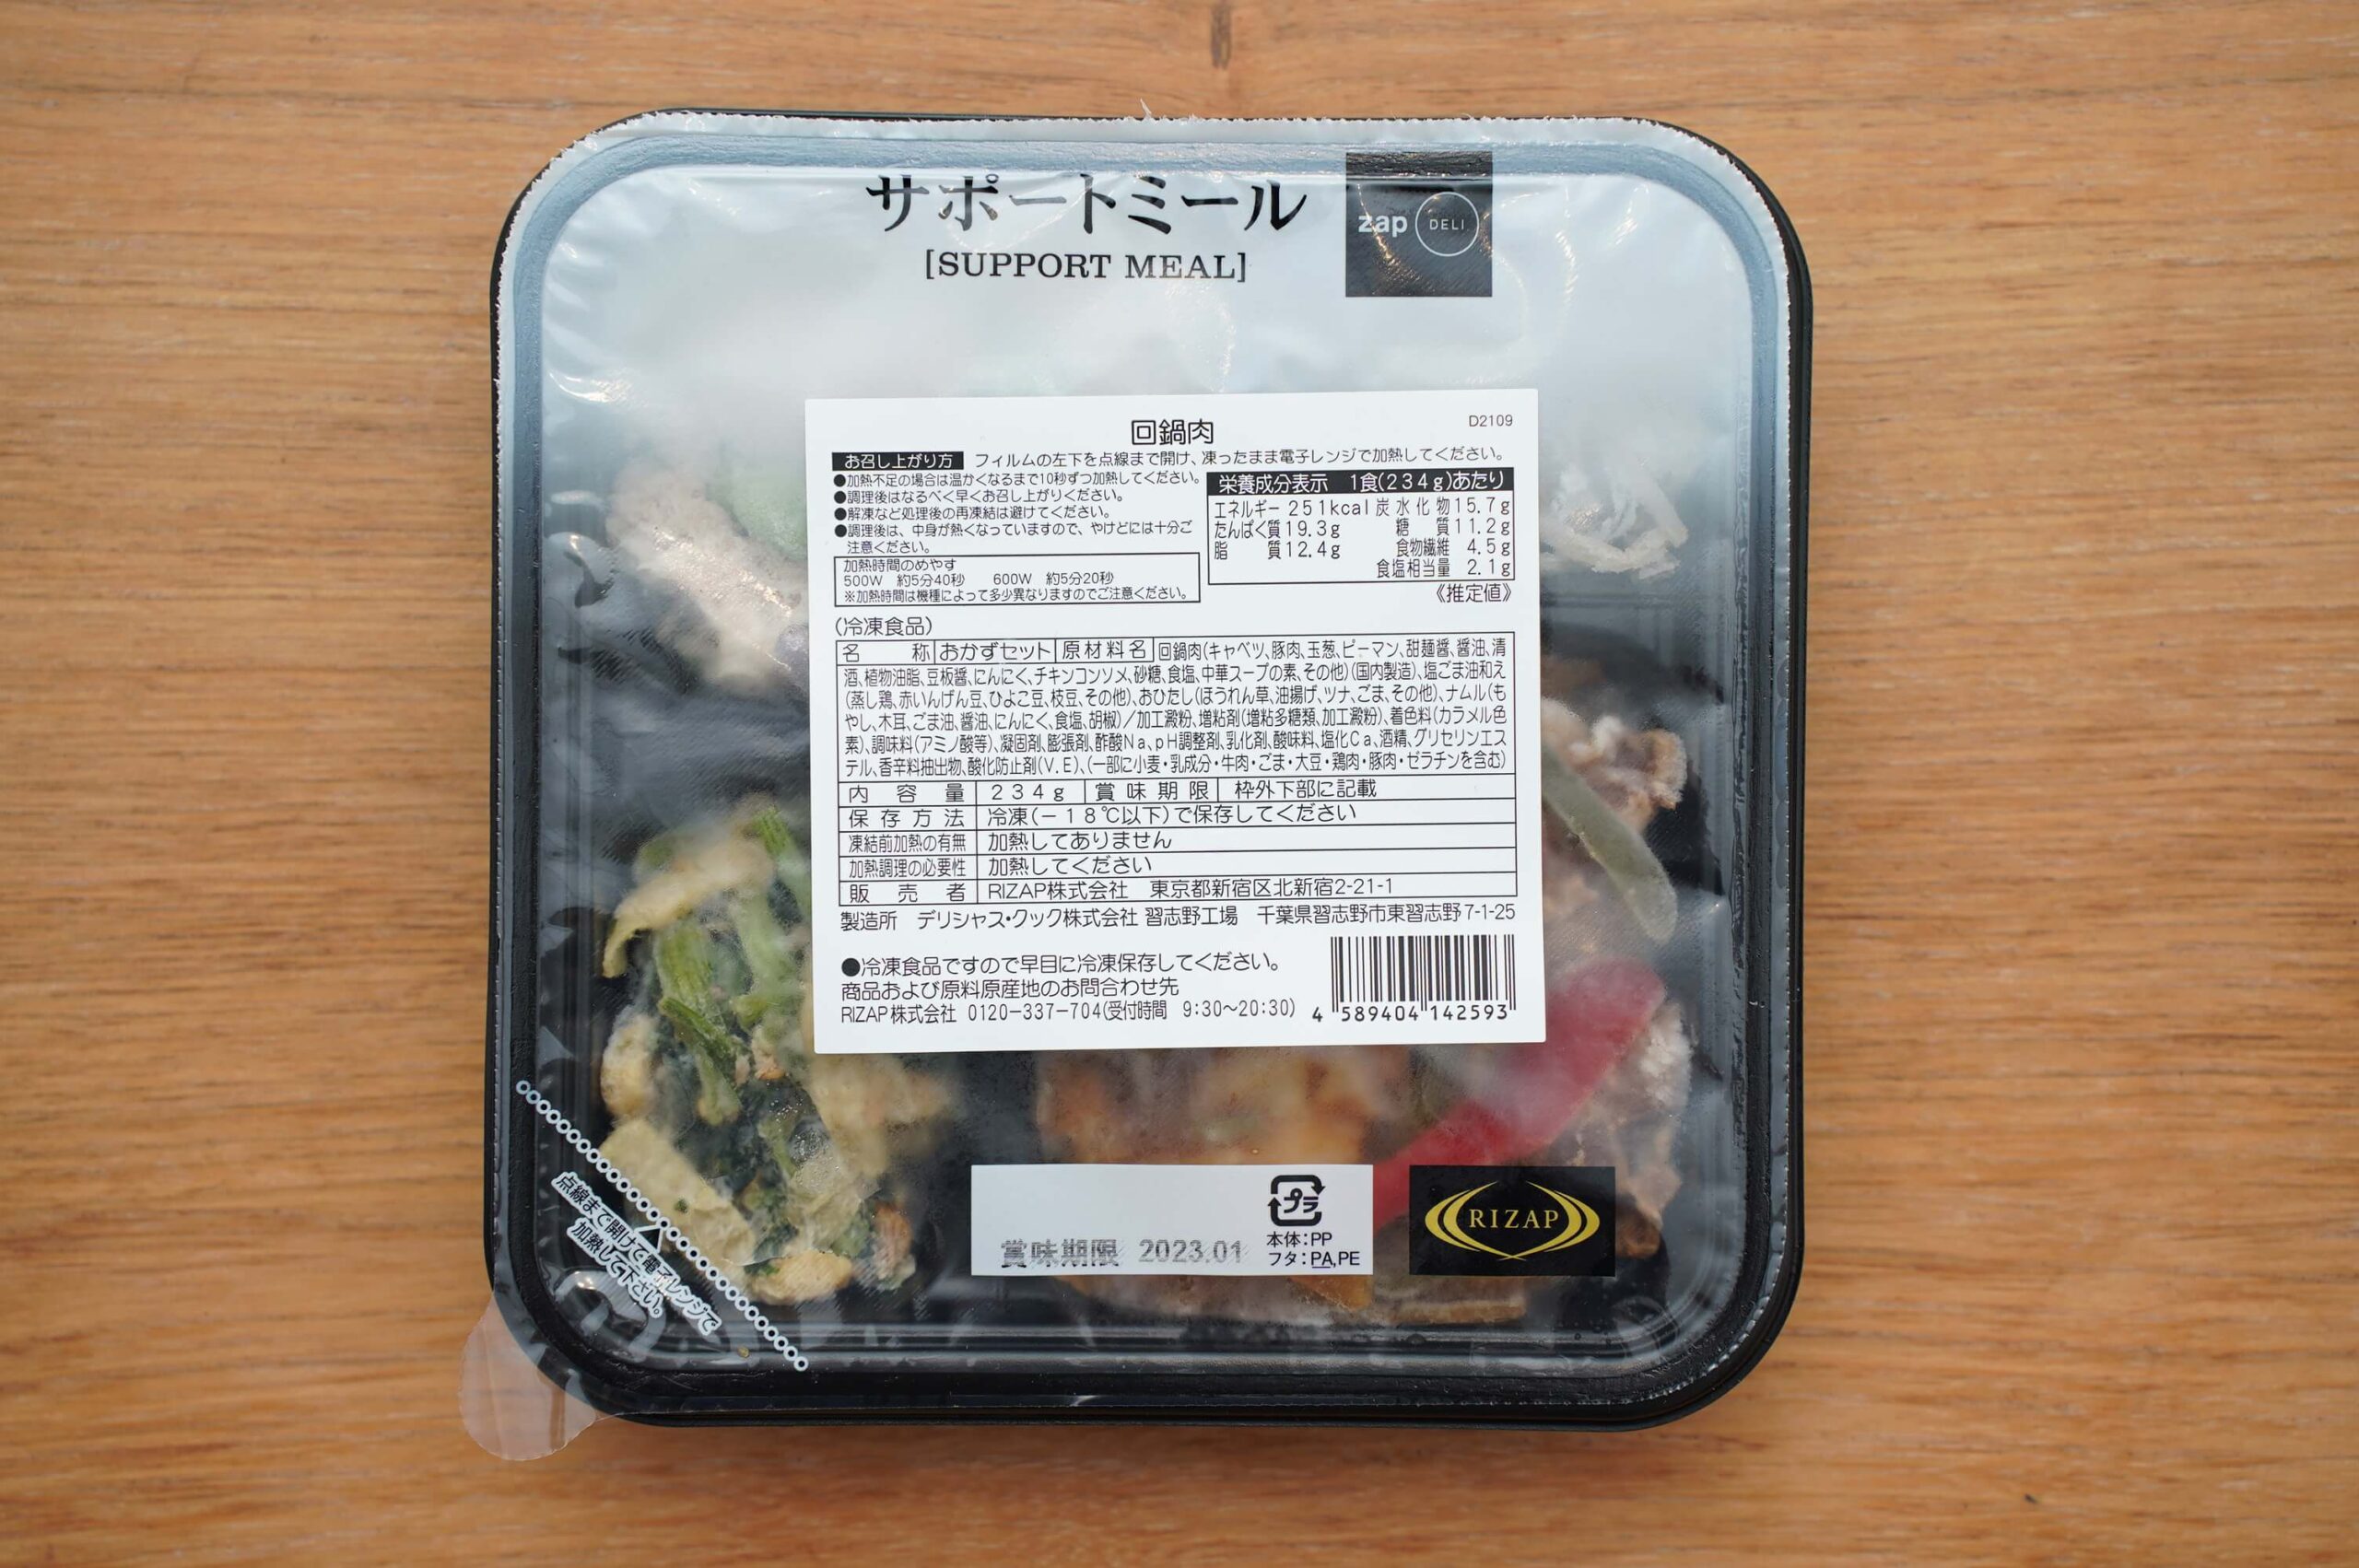 ライザップのサポートミール「回鍋肉（ホイコーロー）」のパッケージ写真